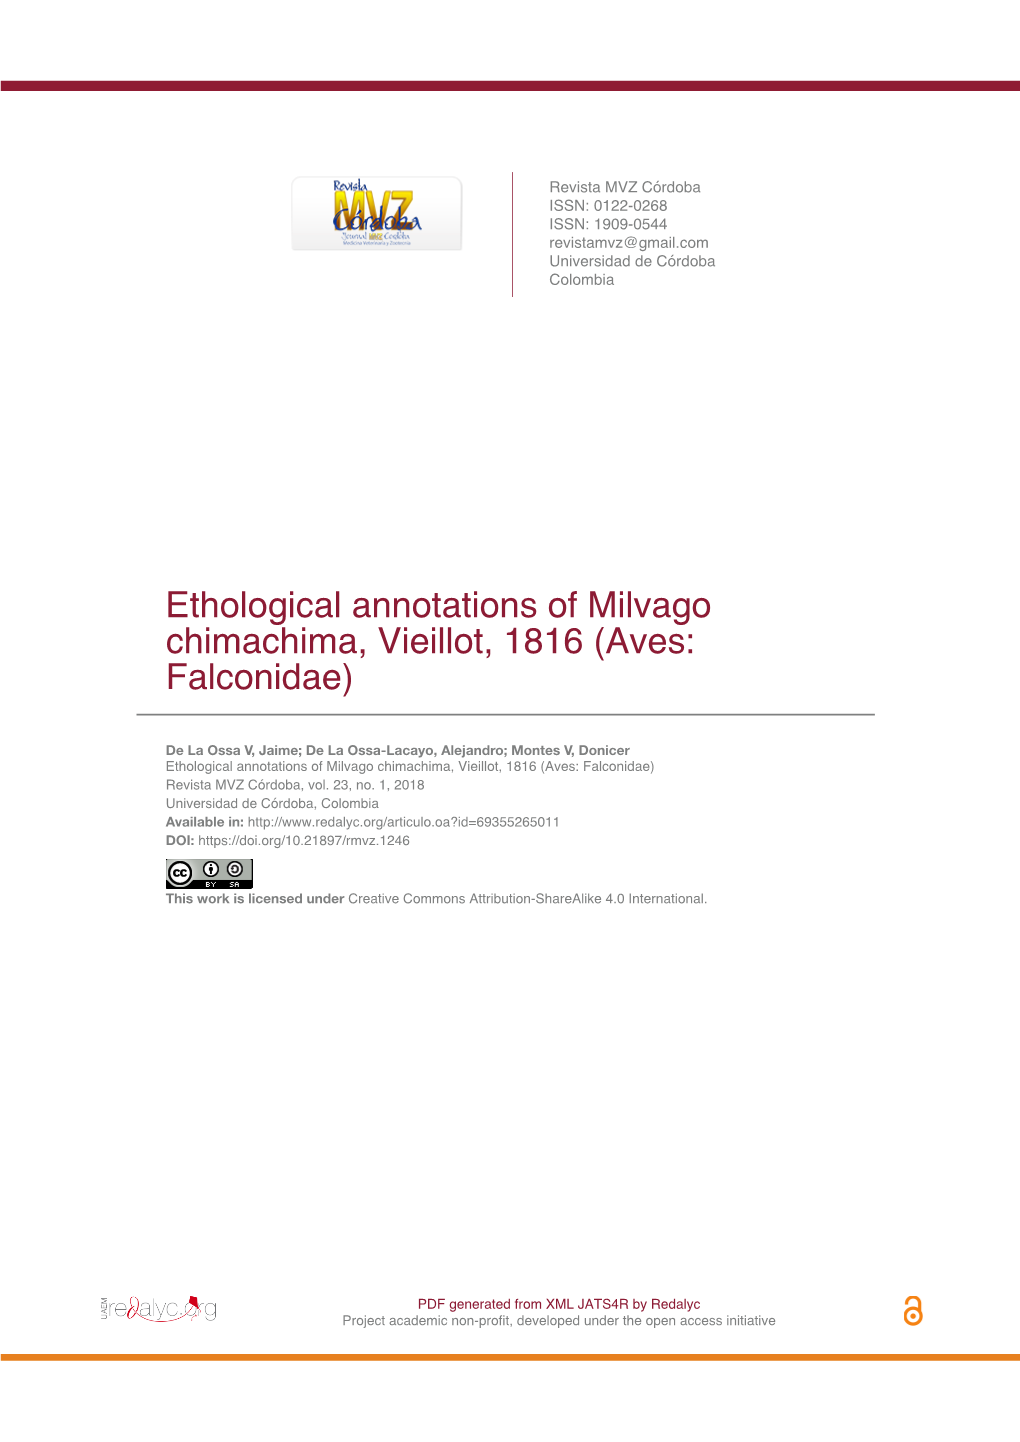 Ethological Annotations of Milvago Chimachima, Vieillot, 1816 (Aves: Falconidae)